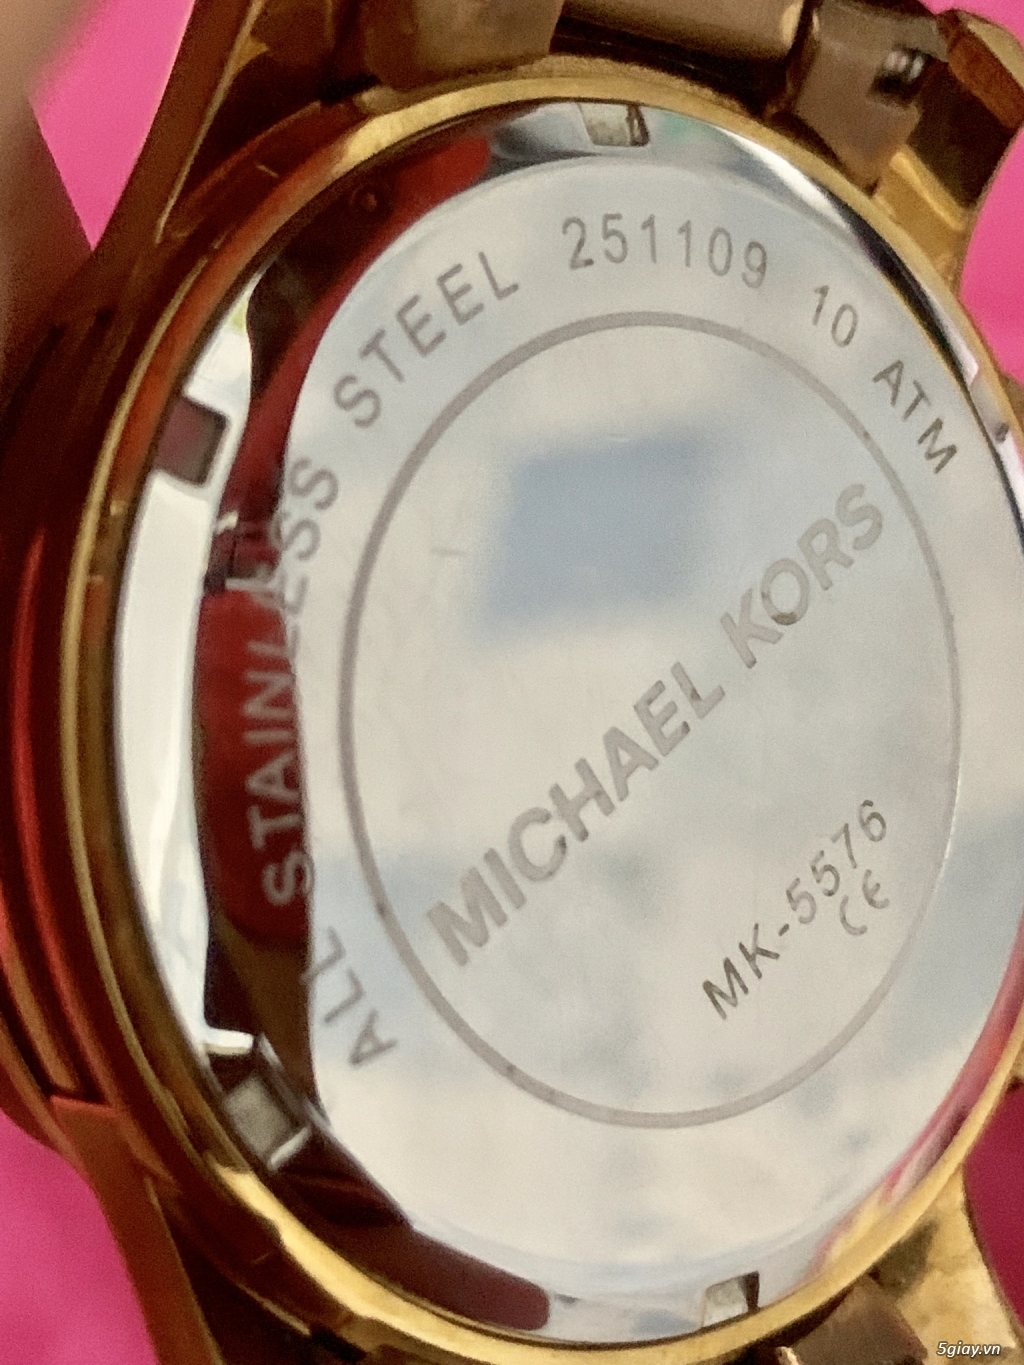 Đồng hồ Michael Kors 5576 auth% full box.Endtime:22h40 ngày 28/08/2019. - 4